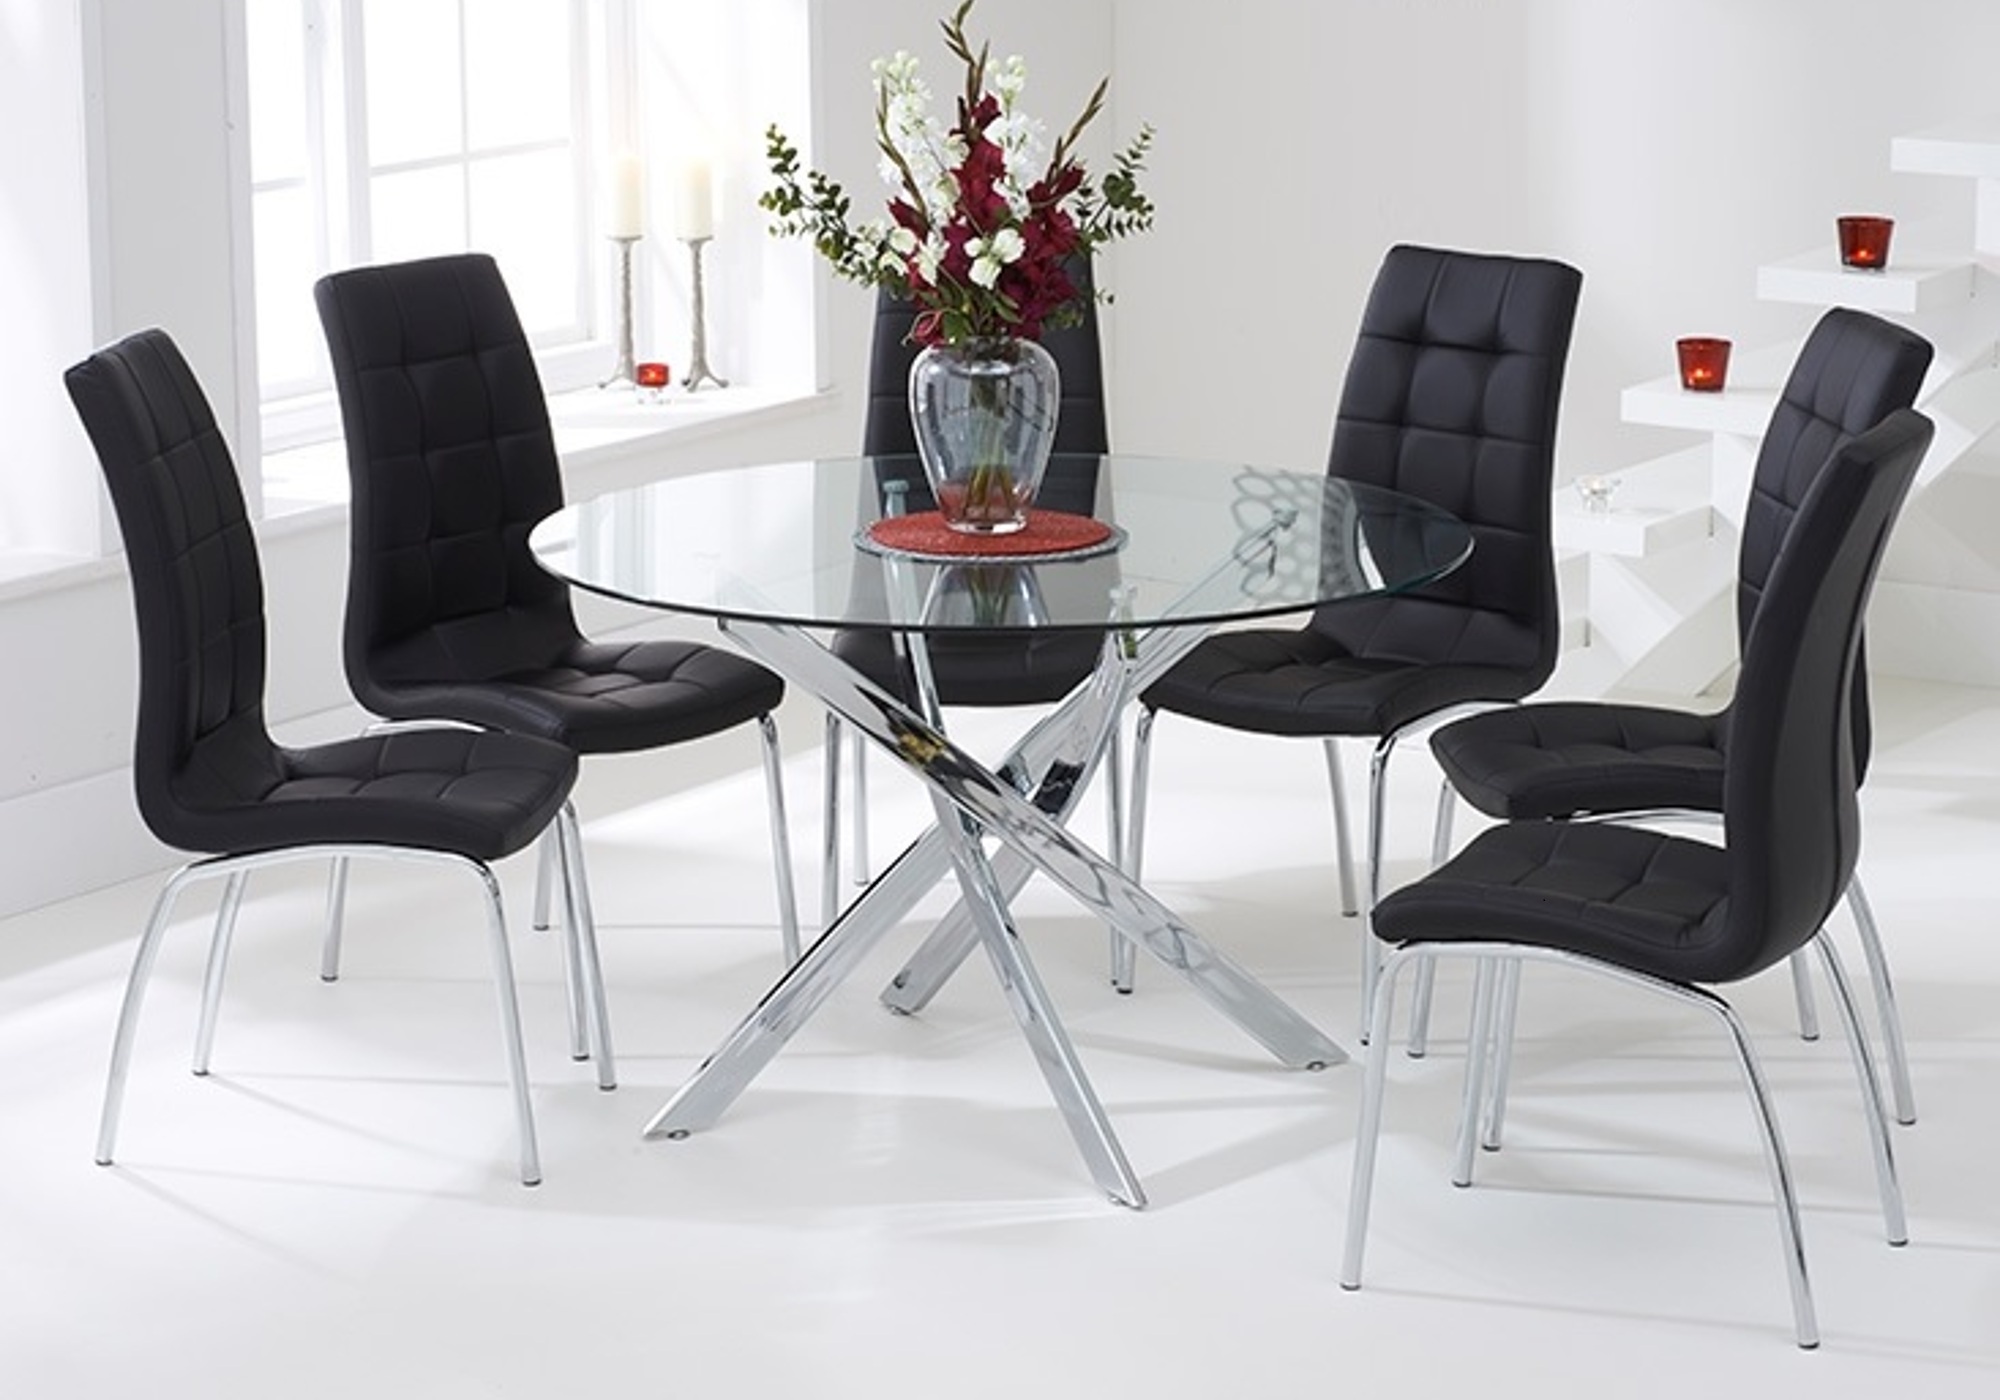 Table chromé 6 chaises noires DESIGN